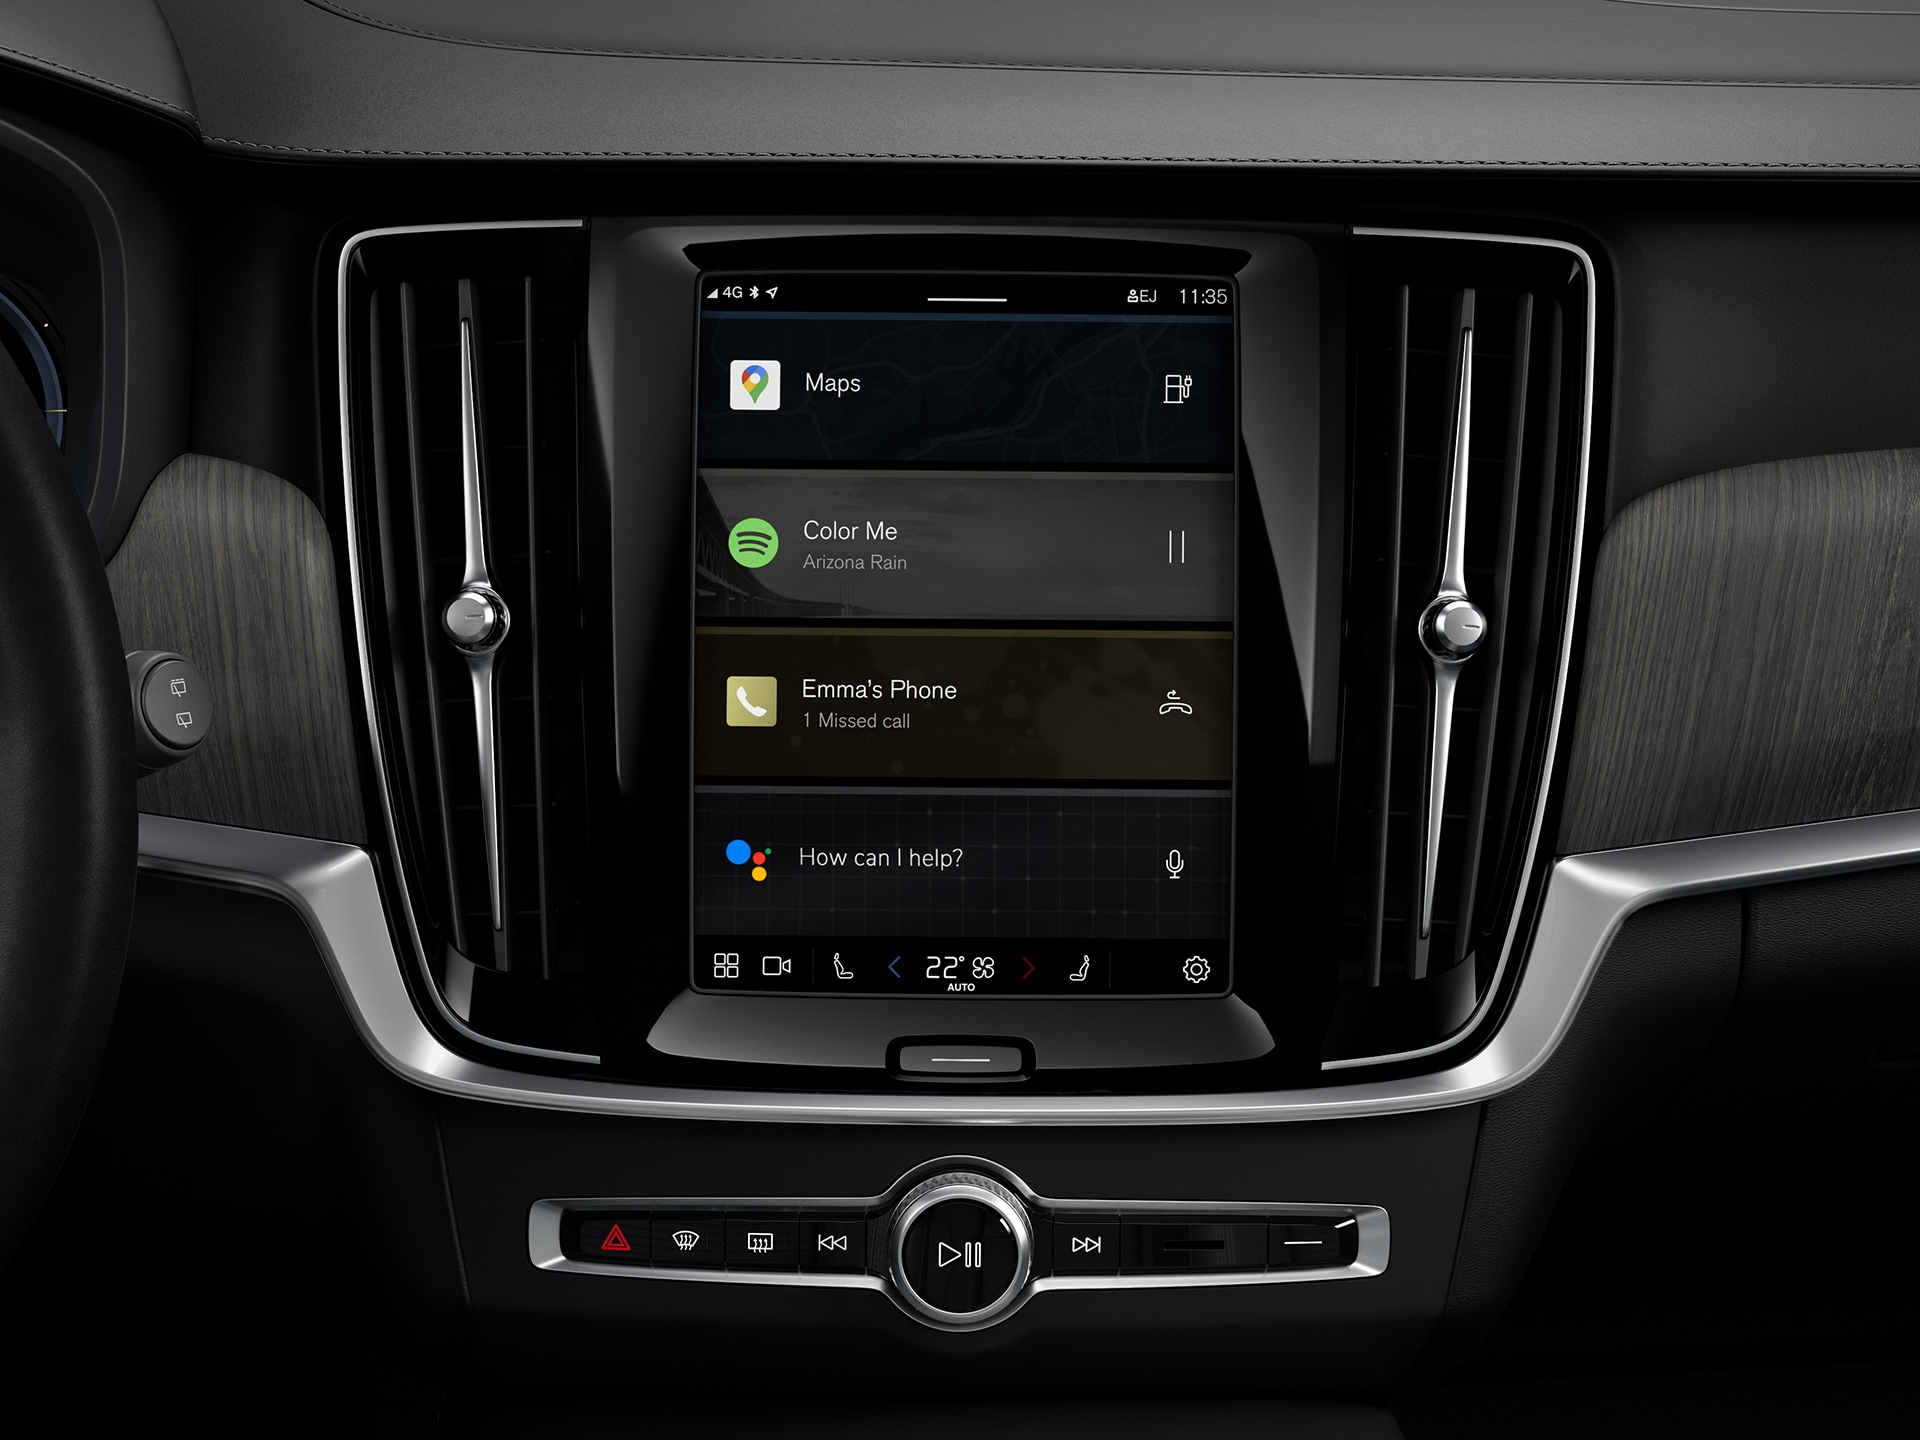 Consola central numa carrinha Volvo a mostrar o sistema de informação/entretenimento Google.